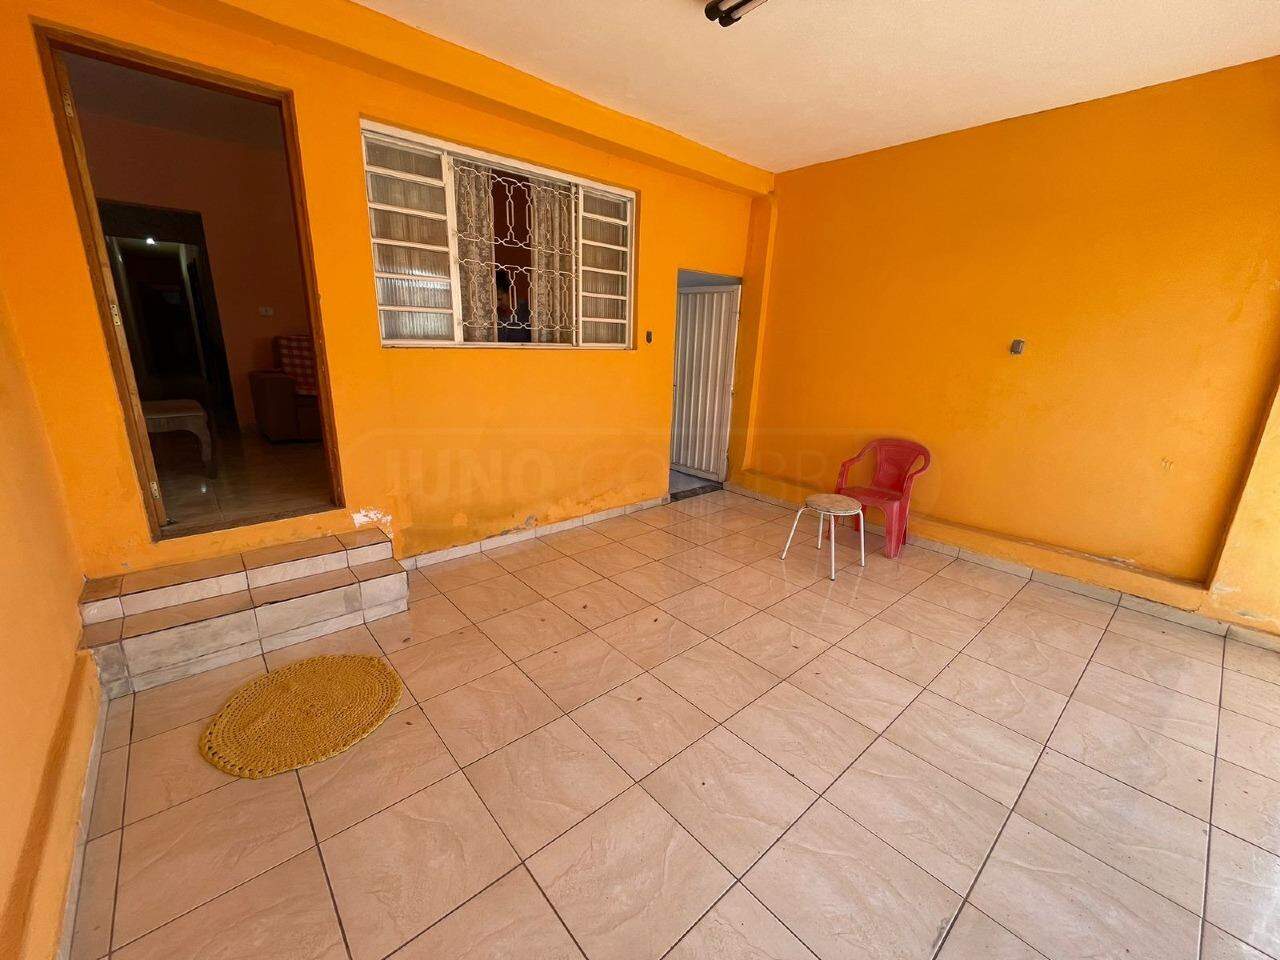 Casa à venda, 3 quartos, sendo 1 suíte, 2 vagas, no bairro Jardim Algodoal em Piracicaba - SP